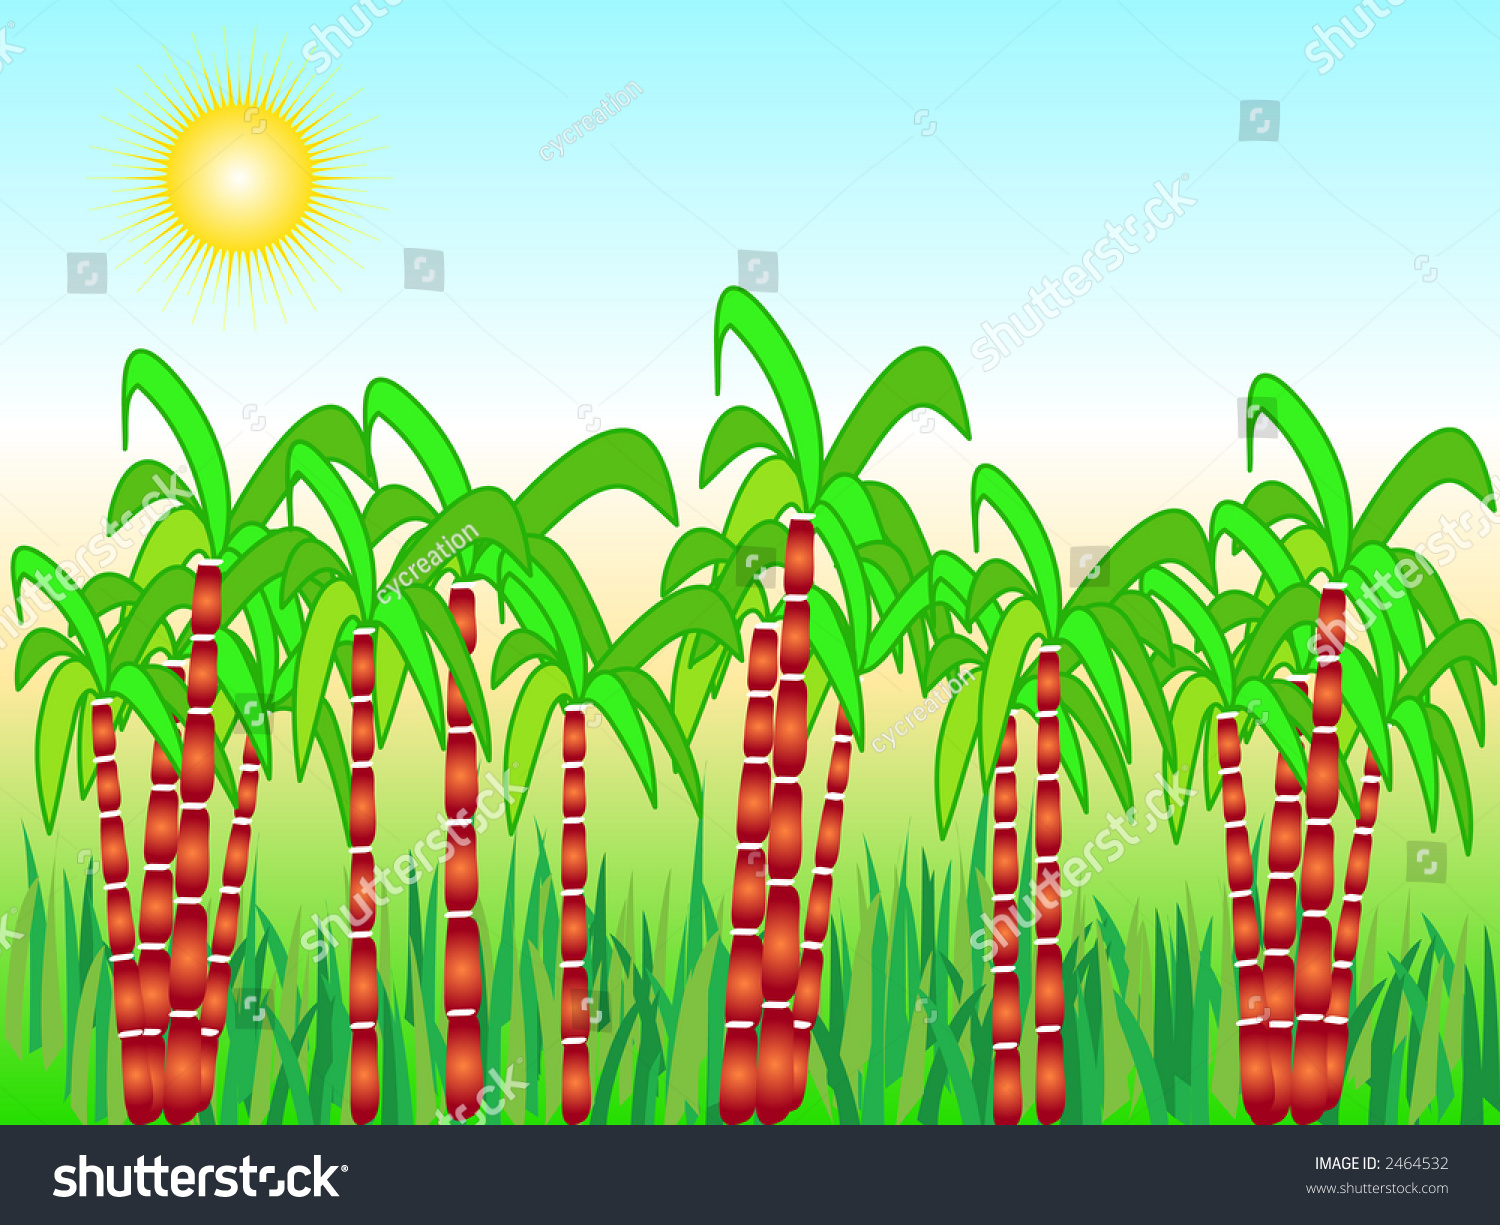 Illustration Of Sugarcane Harvest 2464532 Shutterstock 